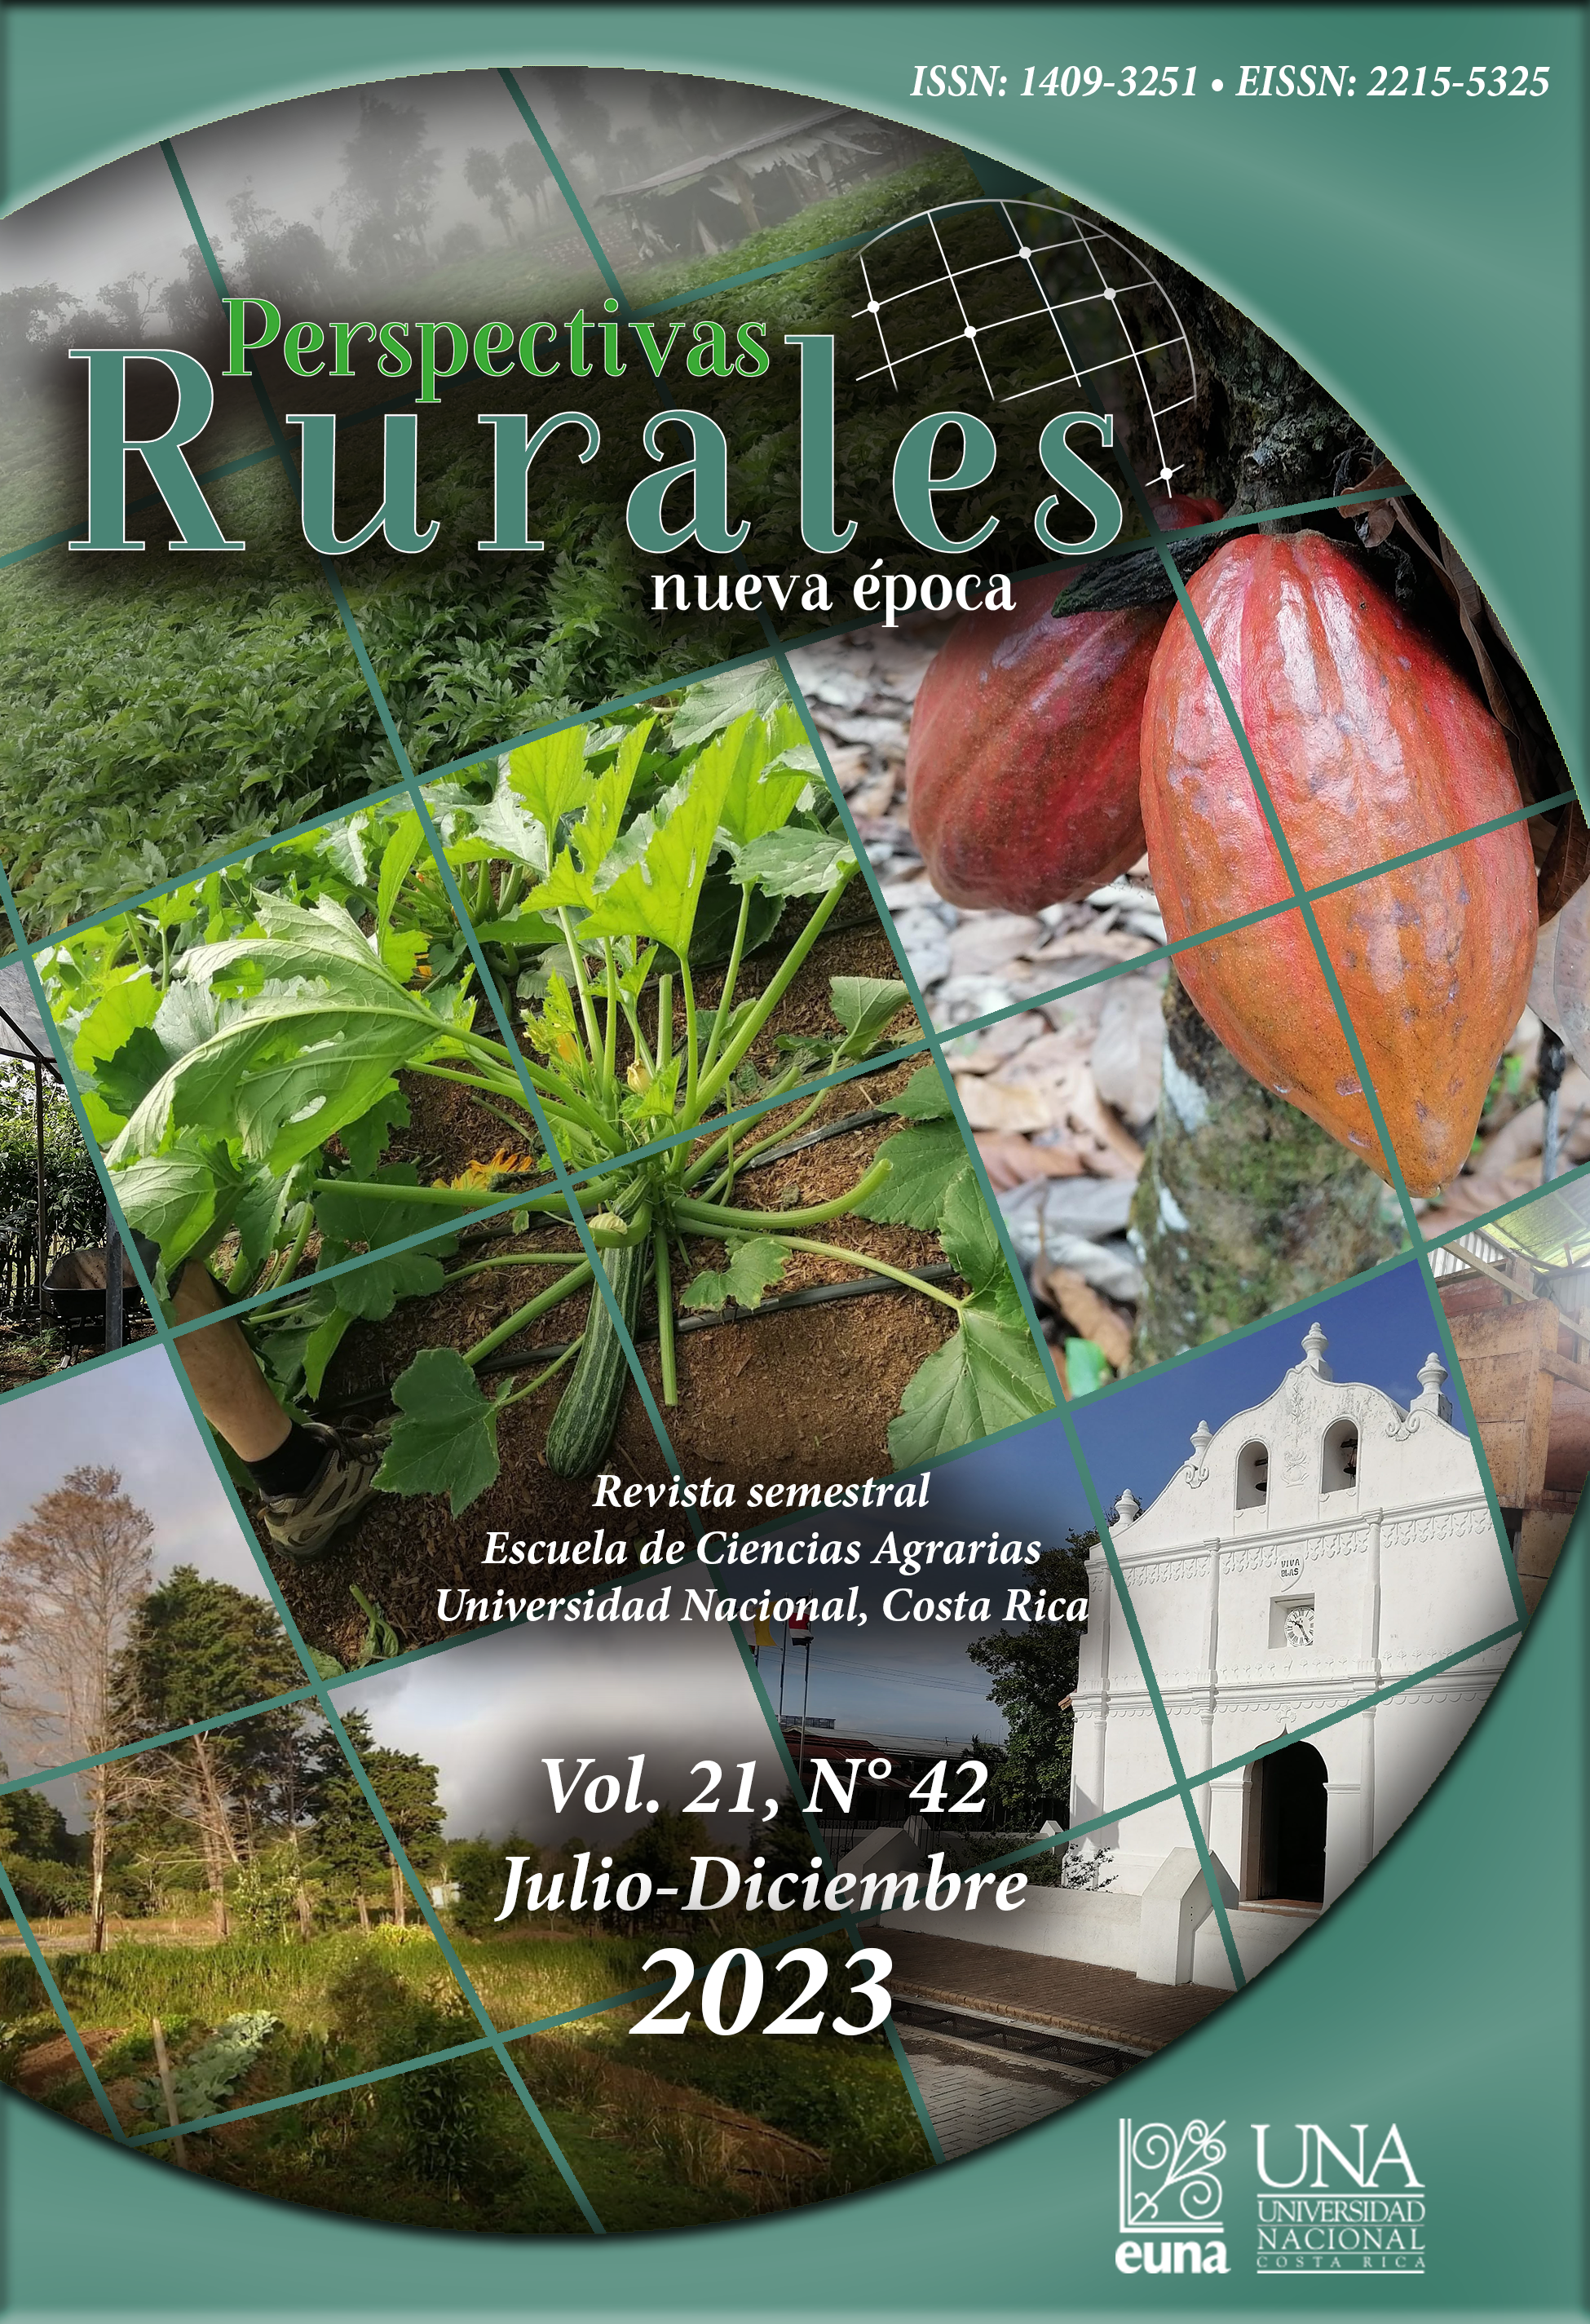 					Ver Vol. 21 Núm. 42 (2023): Revista Perspectivas Rurales Vol. 21 Núm. 42 (Julio - Diciembre 2023)
				